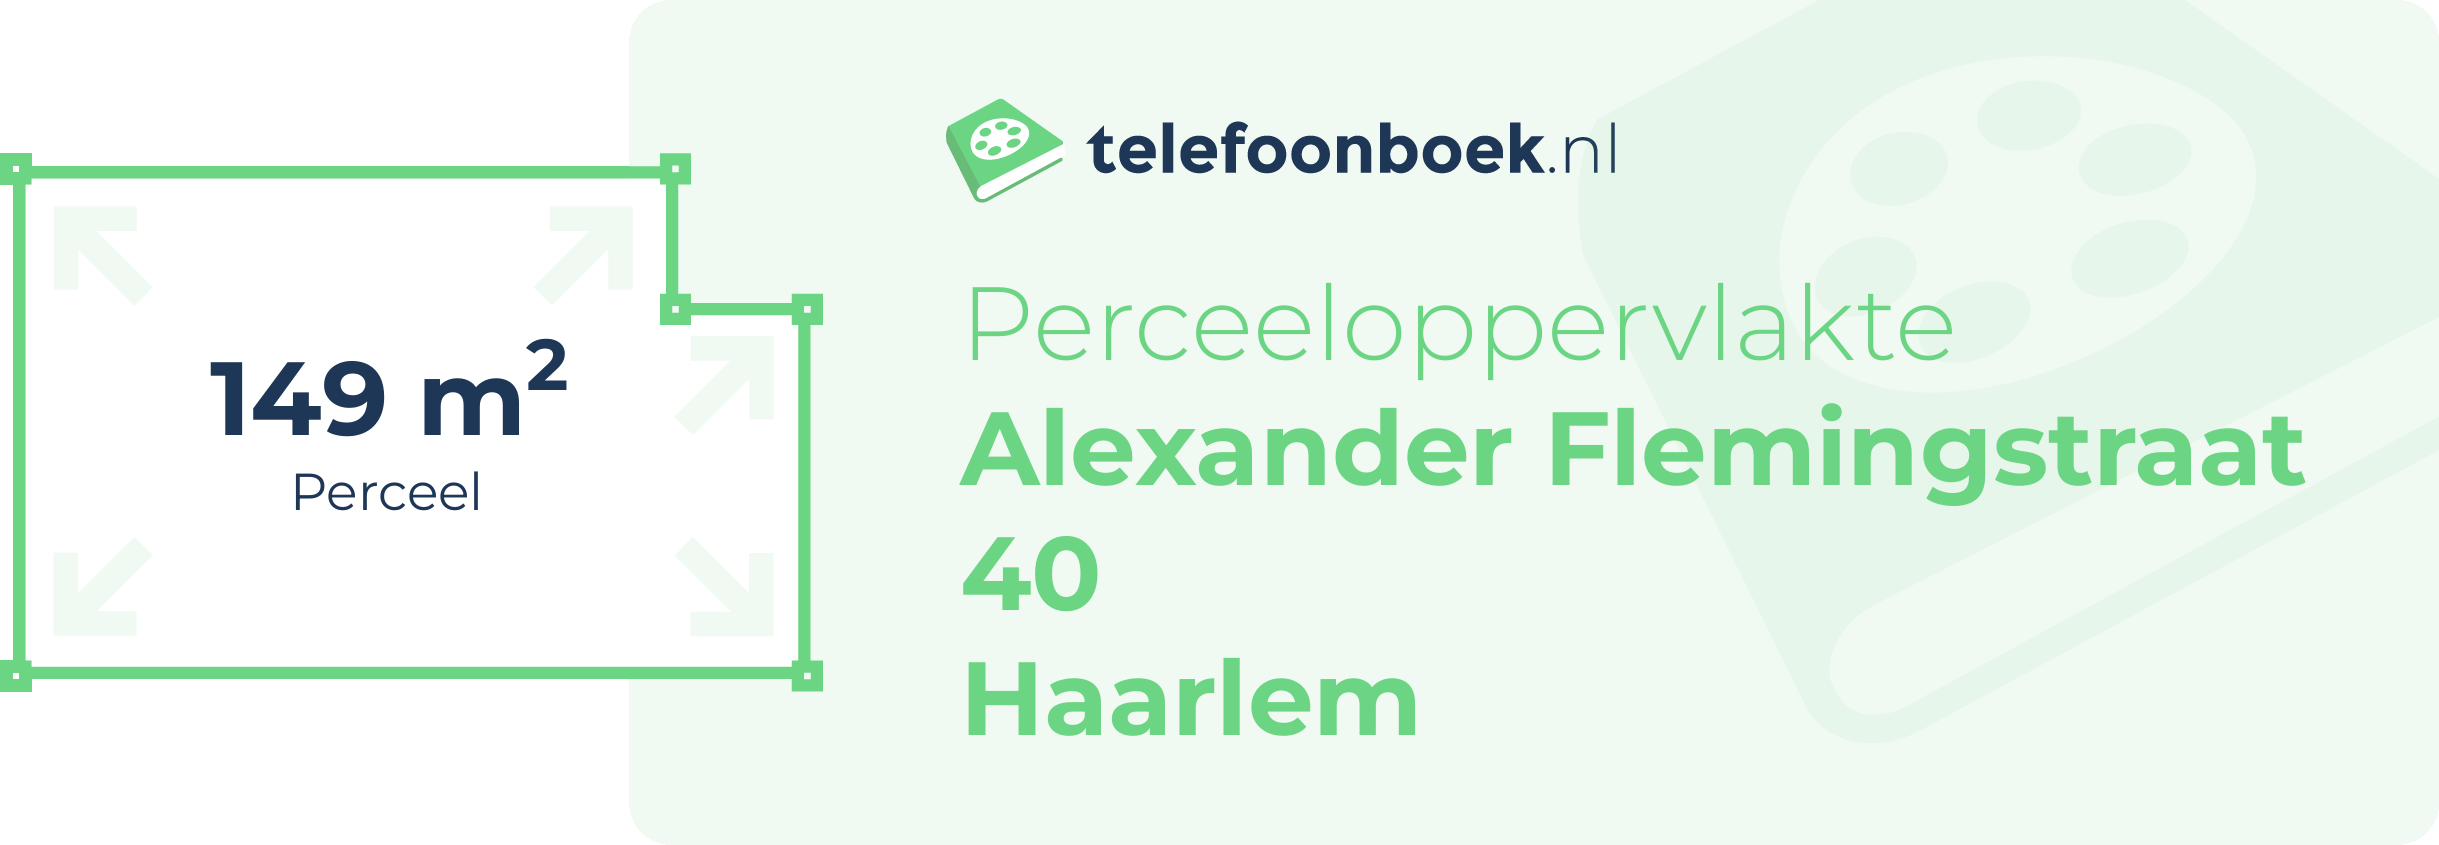 Perceeloppervlakte Alexander Flemingstraat 40 Haarlem